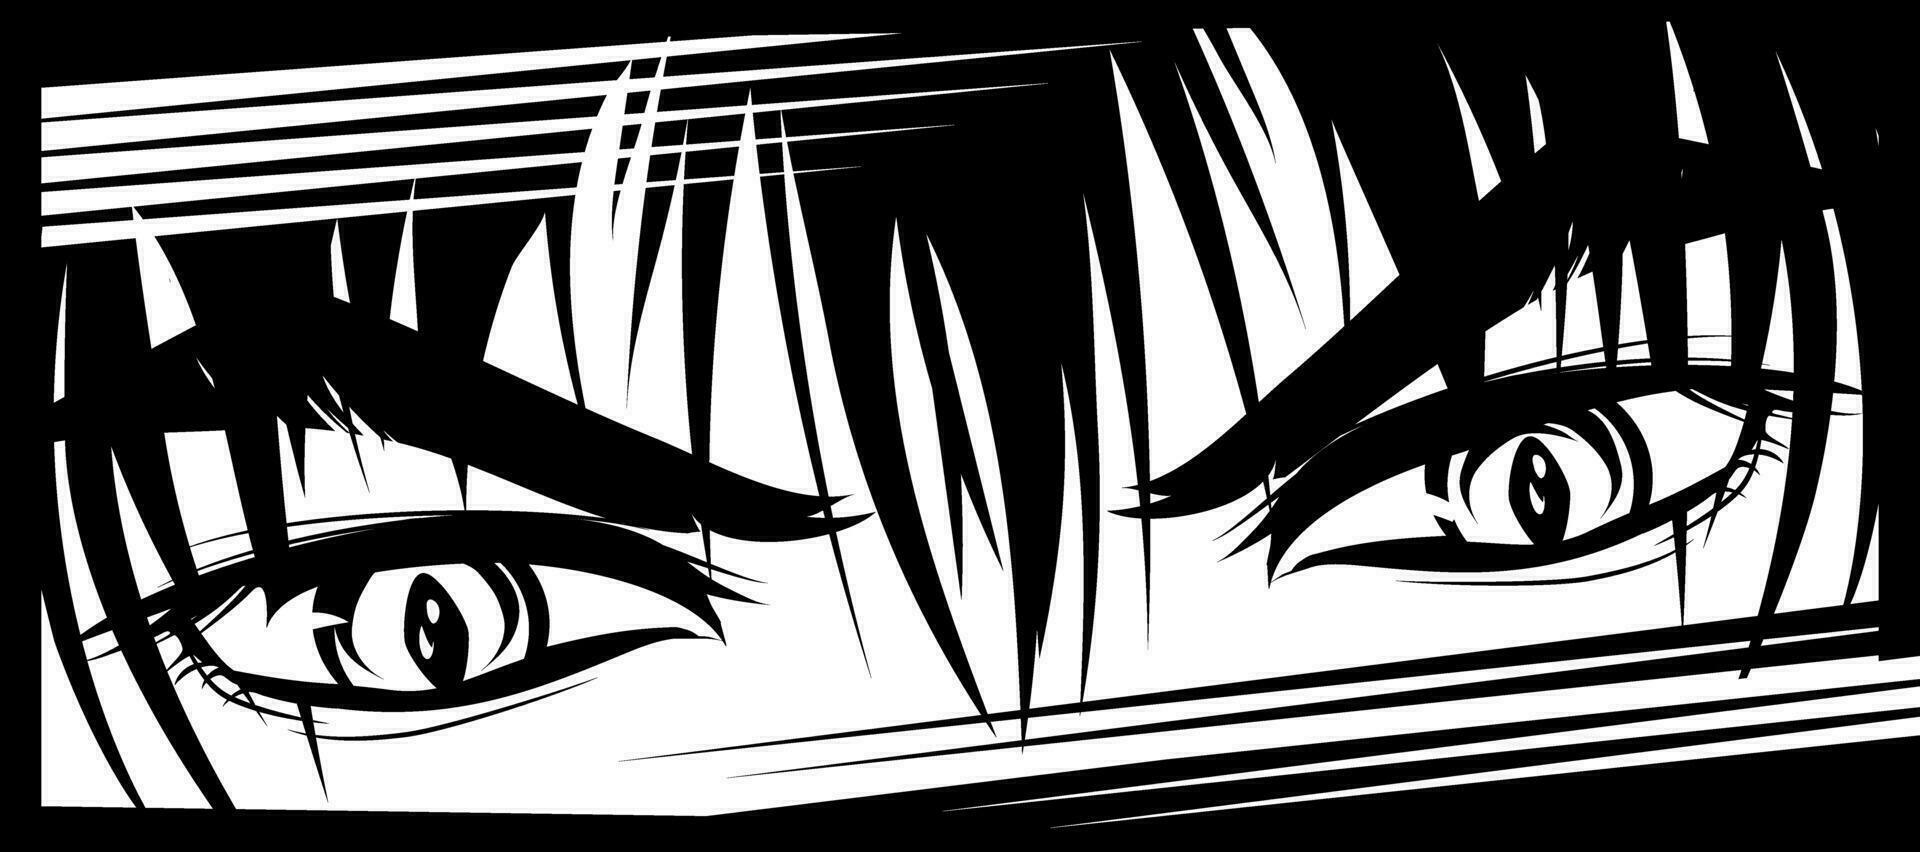 wütend aussehen von ein Mann im Manga und Anime Stil. vektor